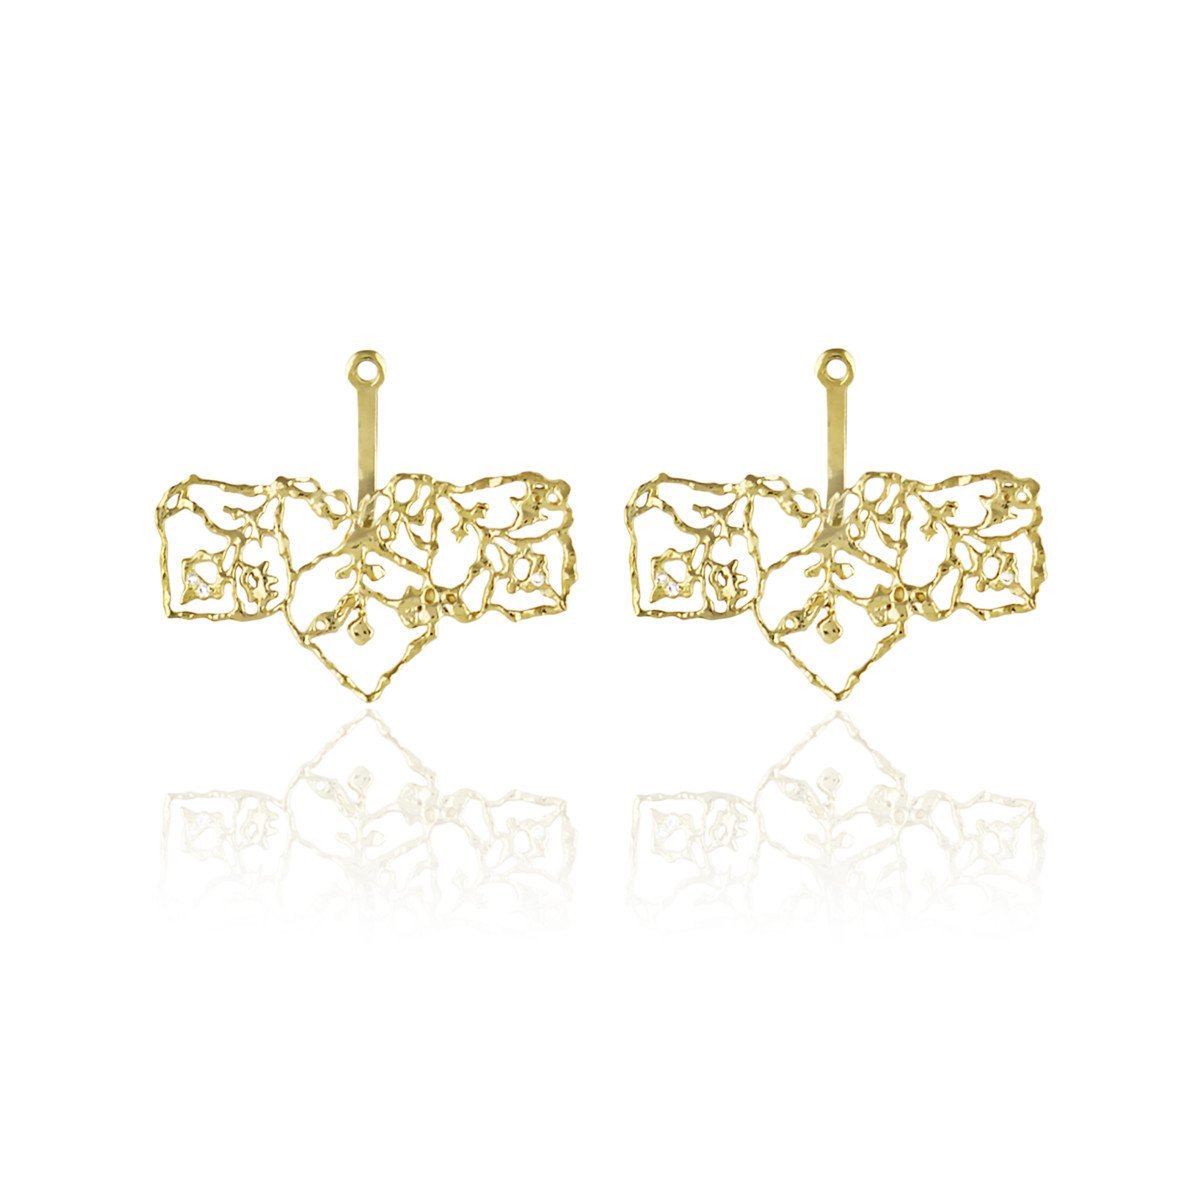 Ювелирный дом Natalie Perry Jewellery представил новую коллекцию украшений из золота, соответствующую стандартам Fair Trade